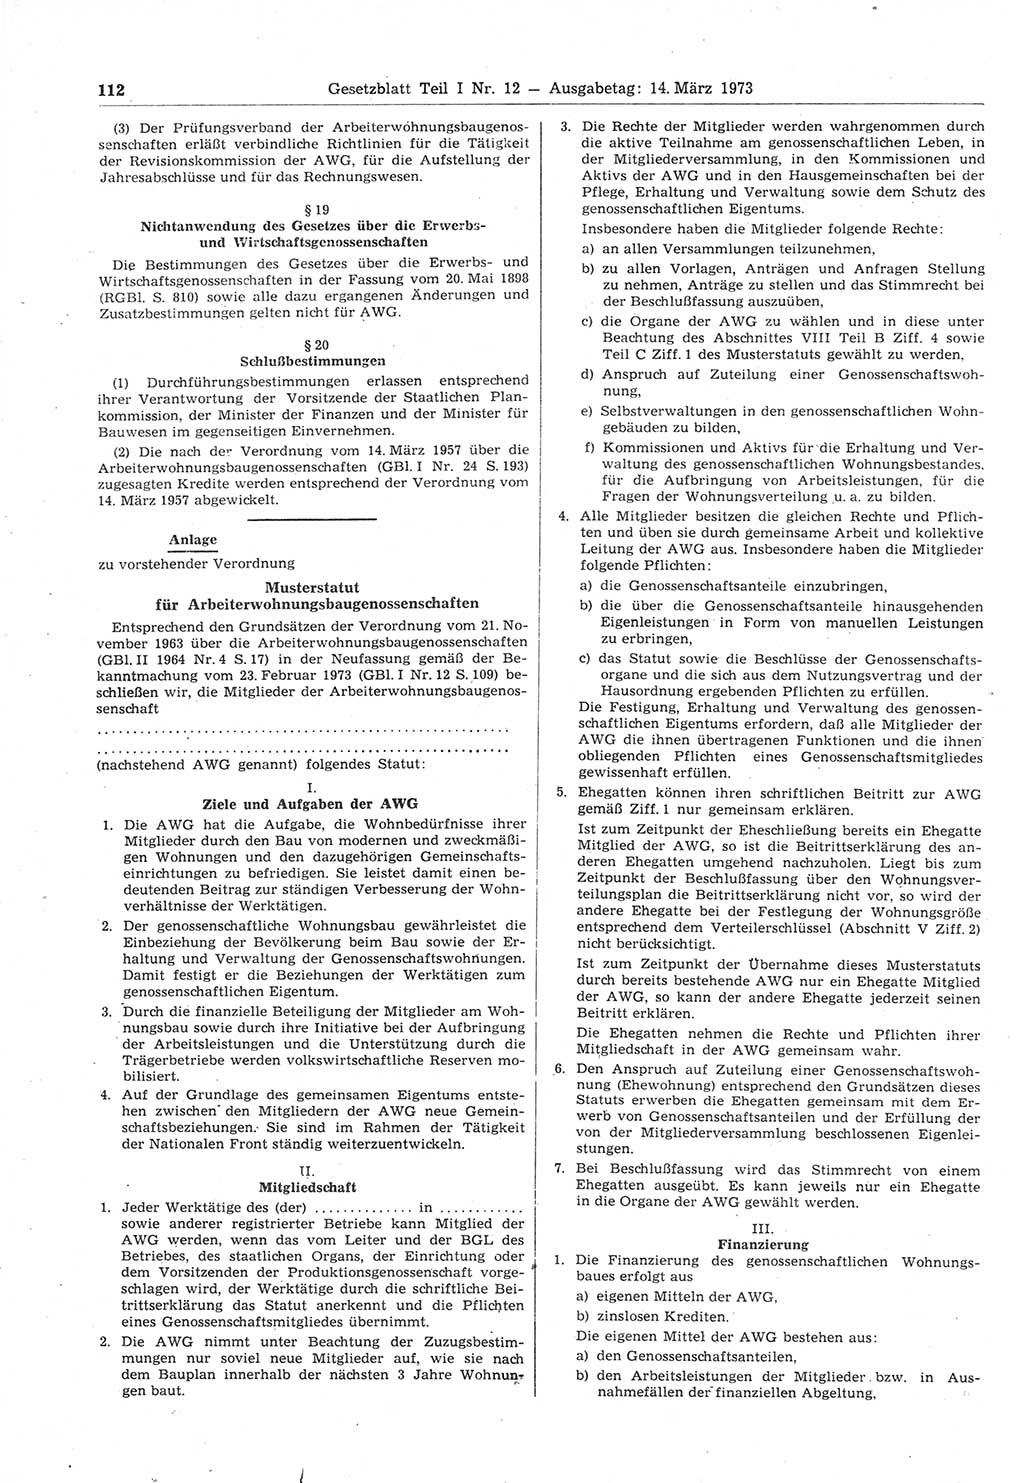 Gesetzblatt (GBl.) der Deutschen Demokratischen Republik (DDR) Teil Ⅰ 1973, Seite 112 (GBl. DDR Ⅰ 1973, S. 112)